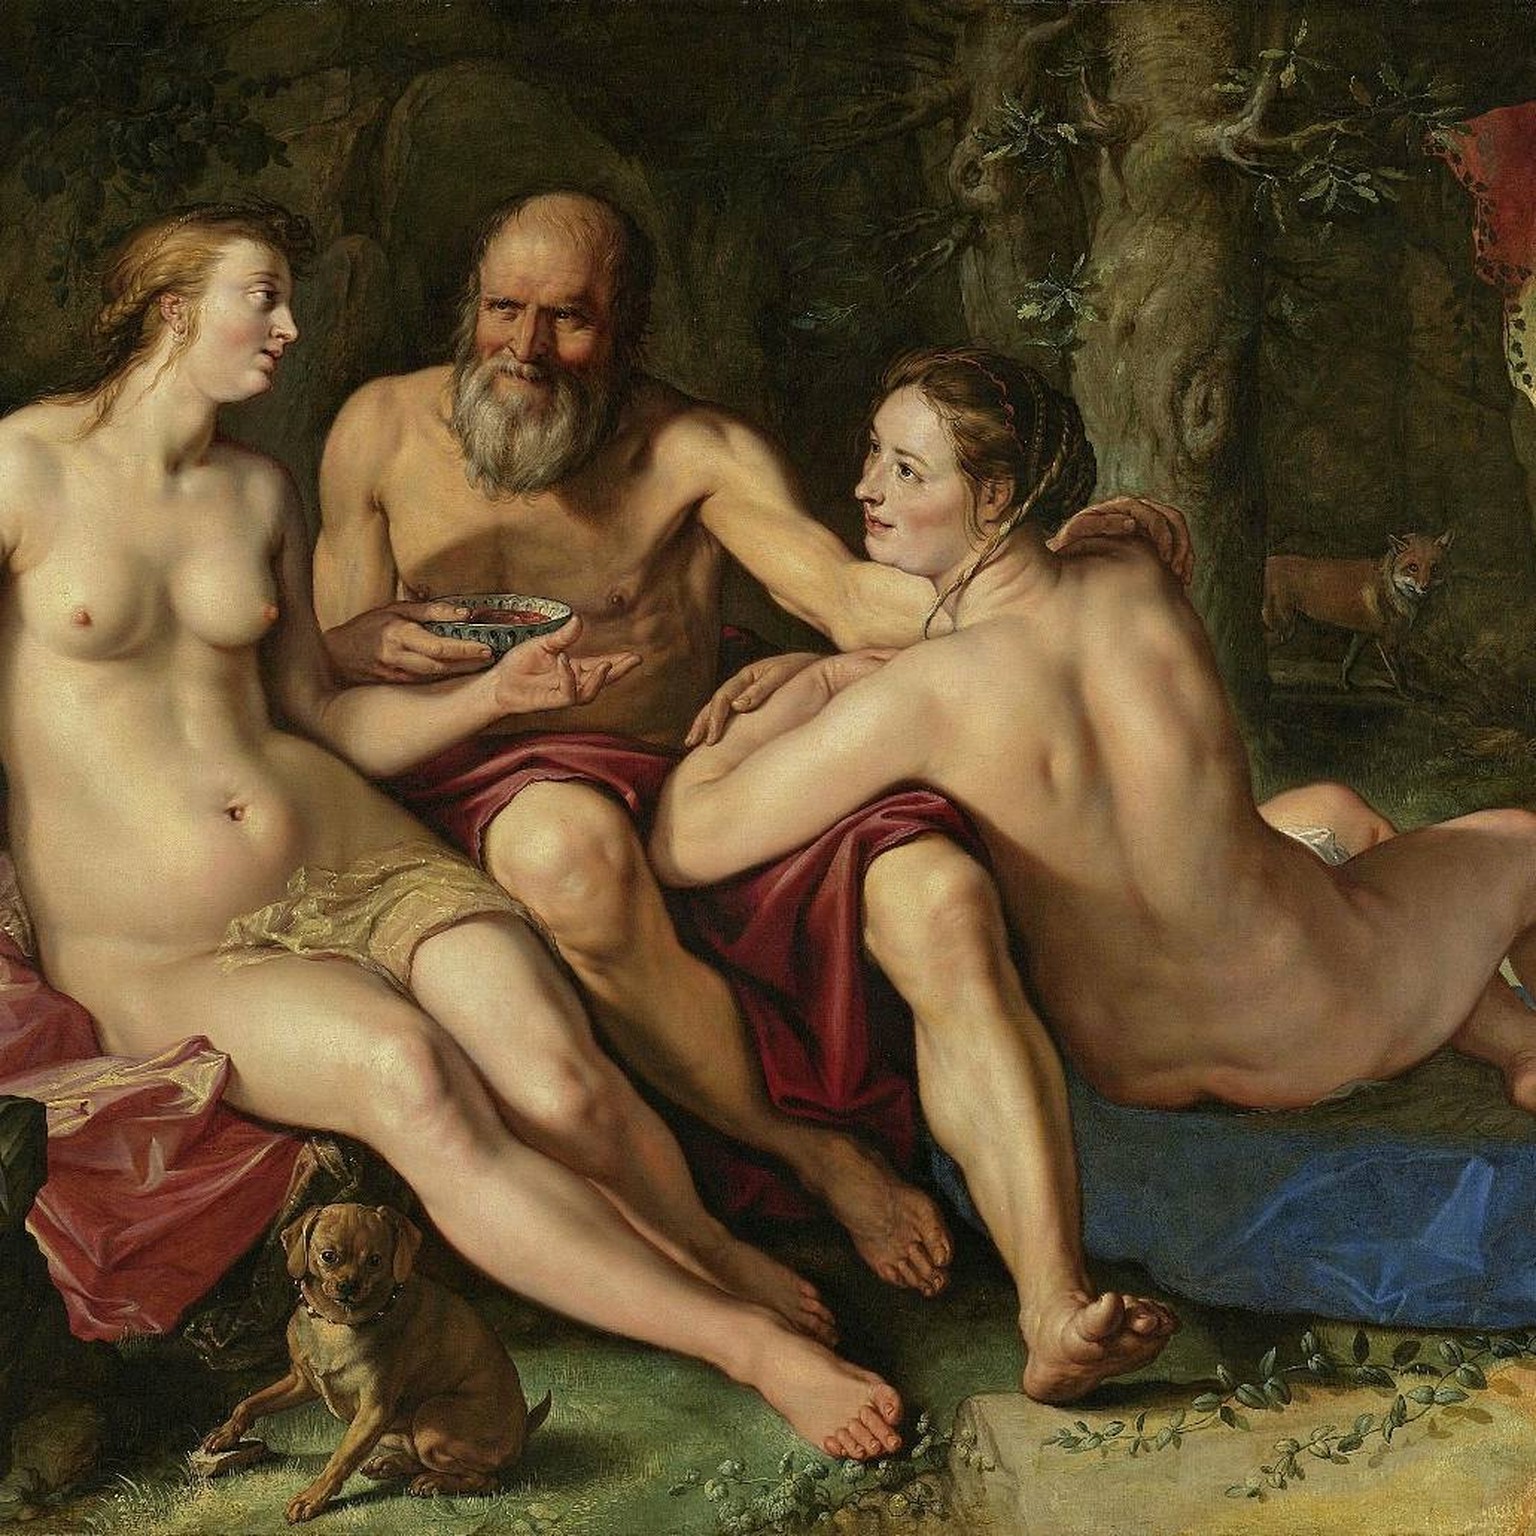 Lot und seine Töchter , Gemälde von Hendrick Goltzius (1616)